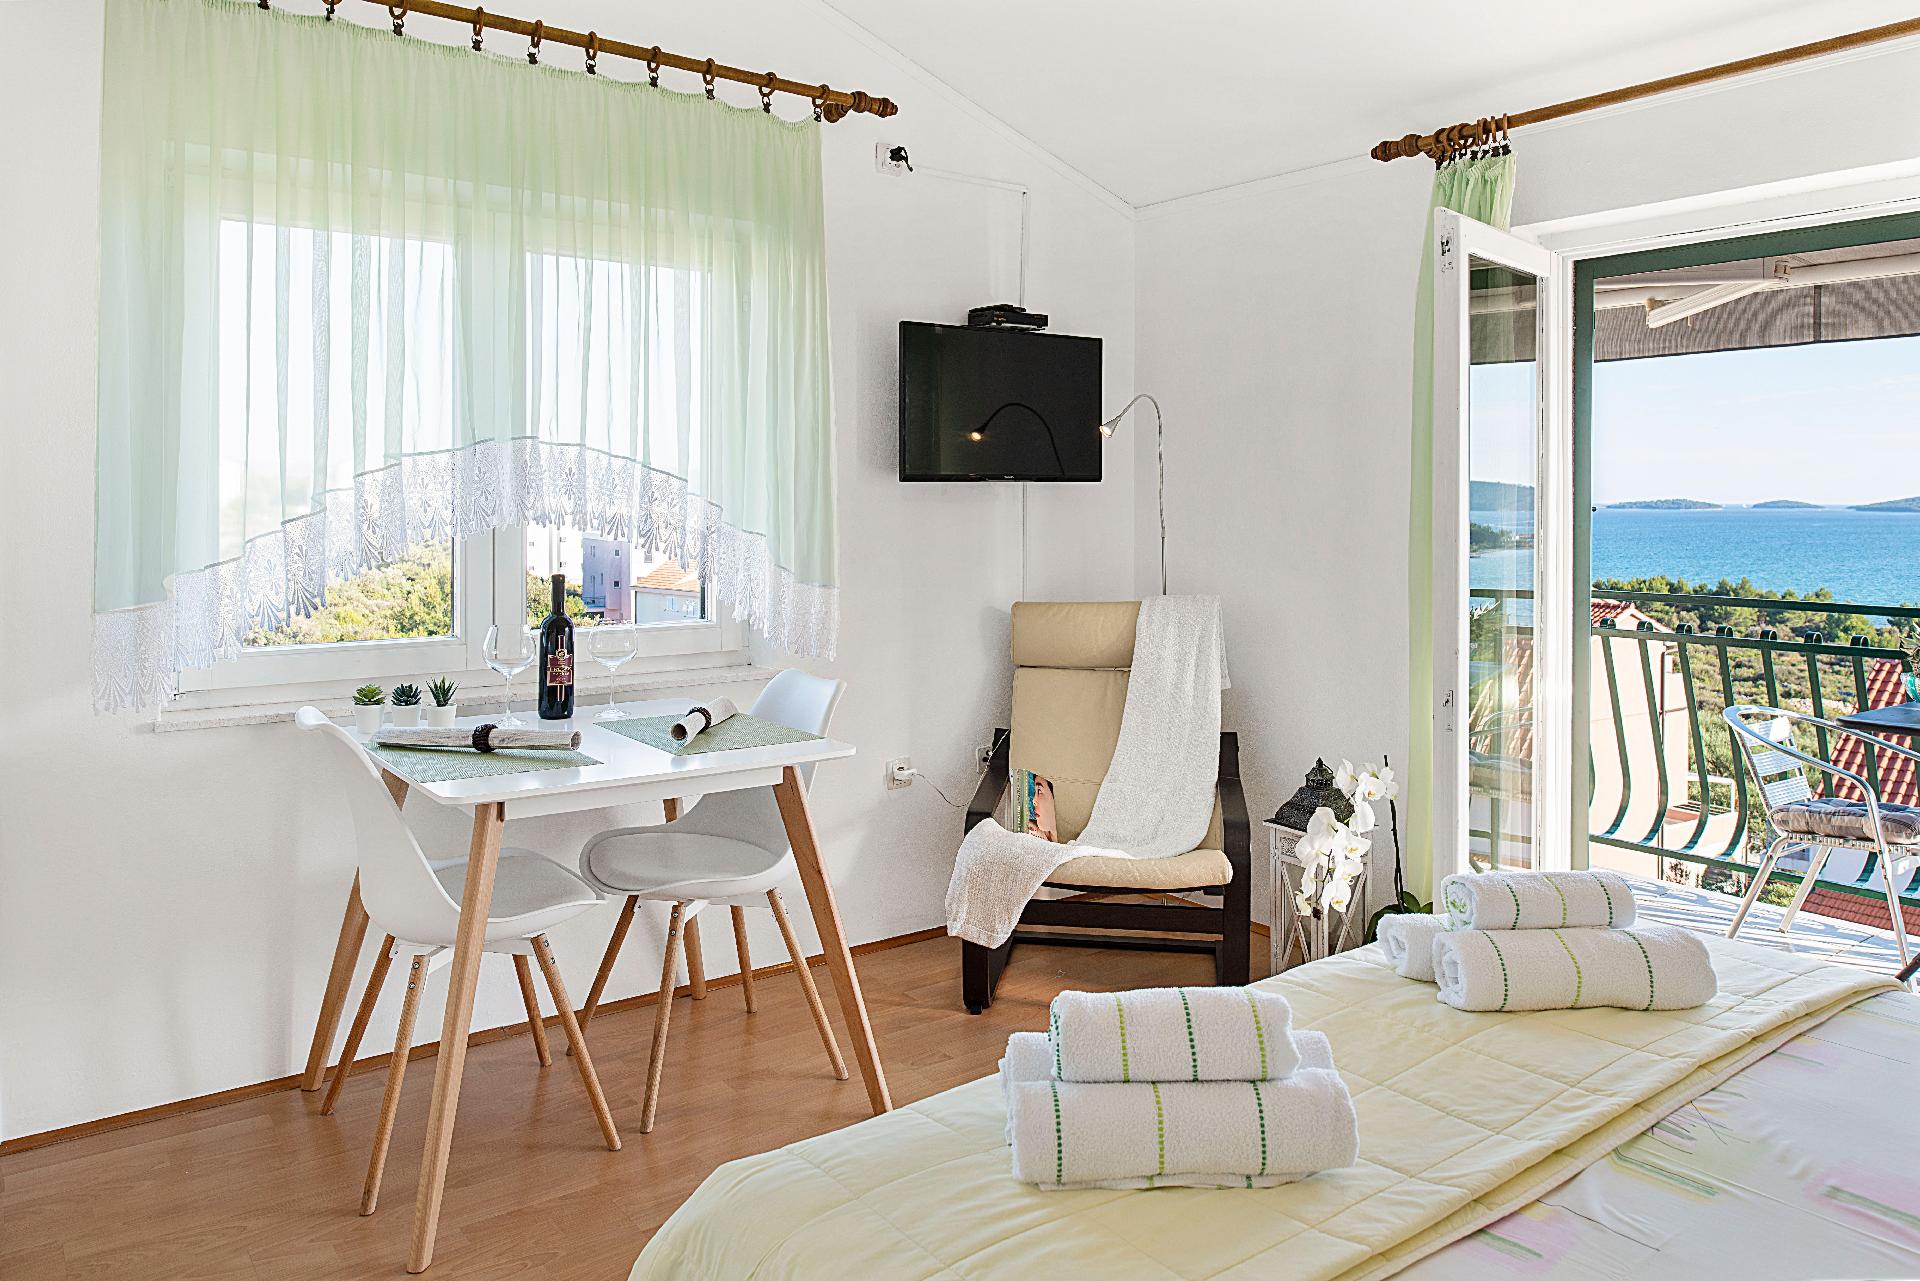 Appartement mit Balkon Ferienwohnung in Dalmatien